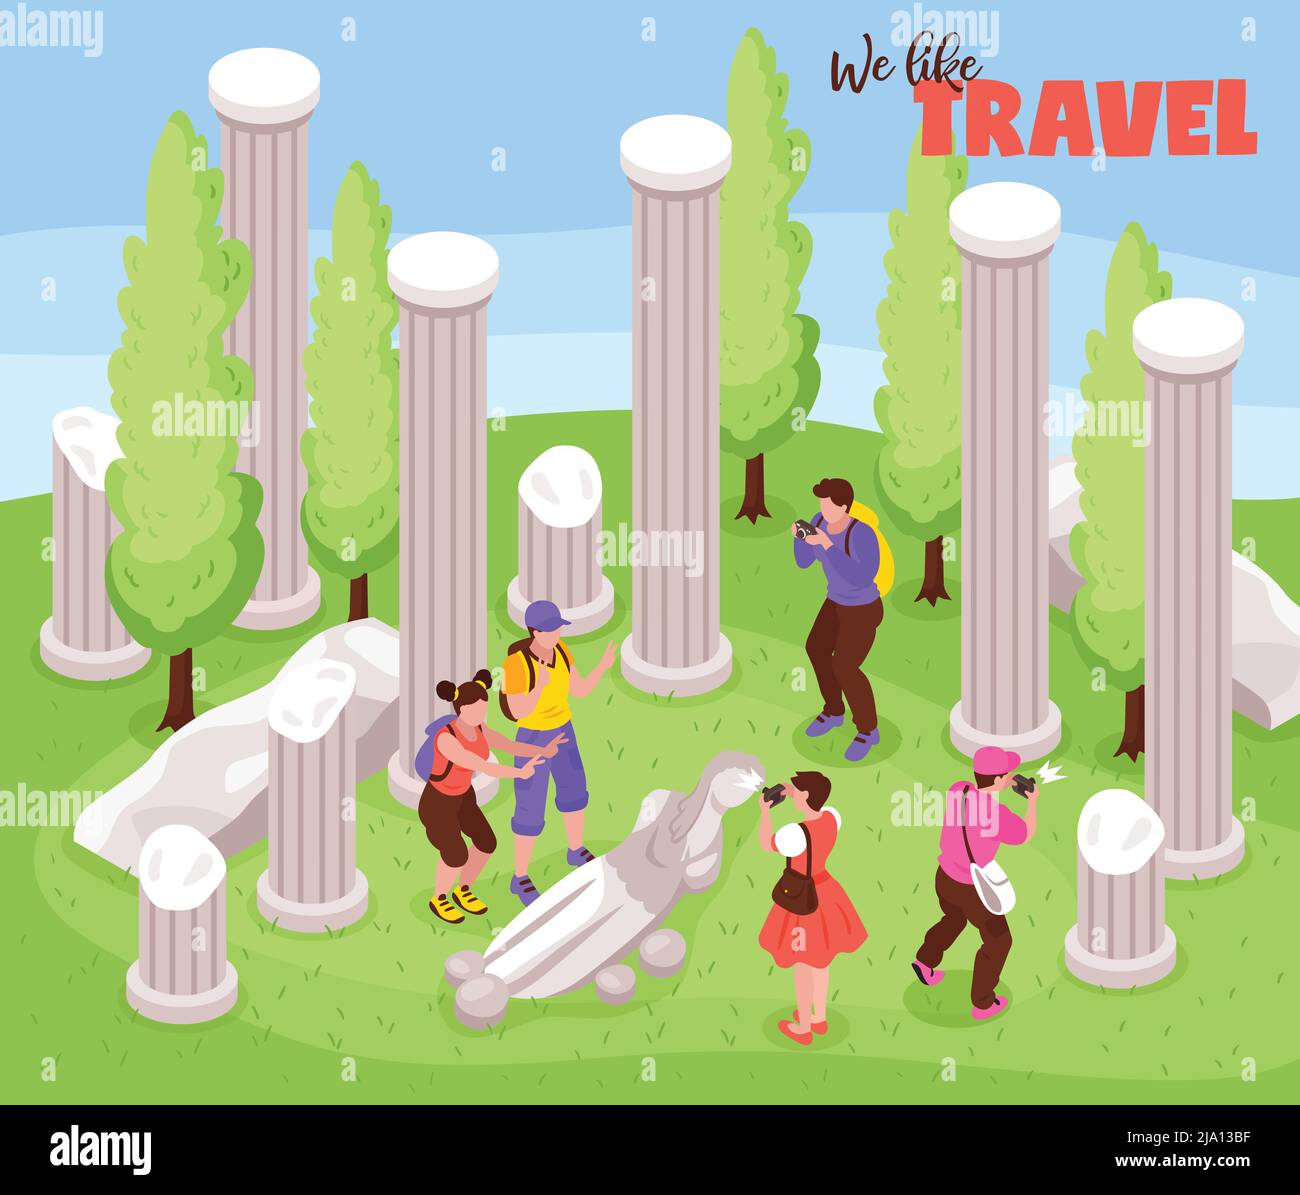 Voyage voyage vacances voyage composition isométrique avec les touristes parmi les piliers antiques de monuments sculptures faisant des photos illustration vectorielle Illustration de Vecteur